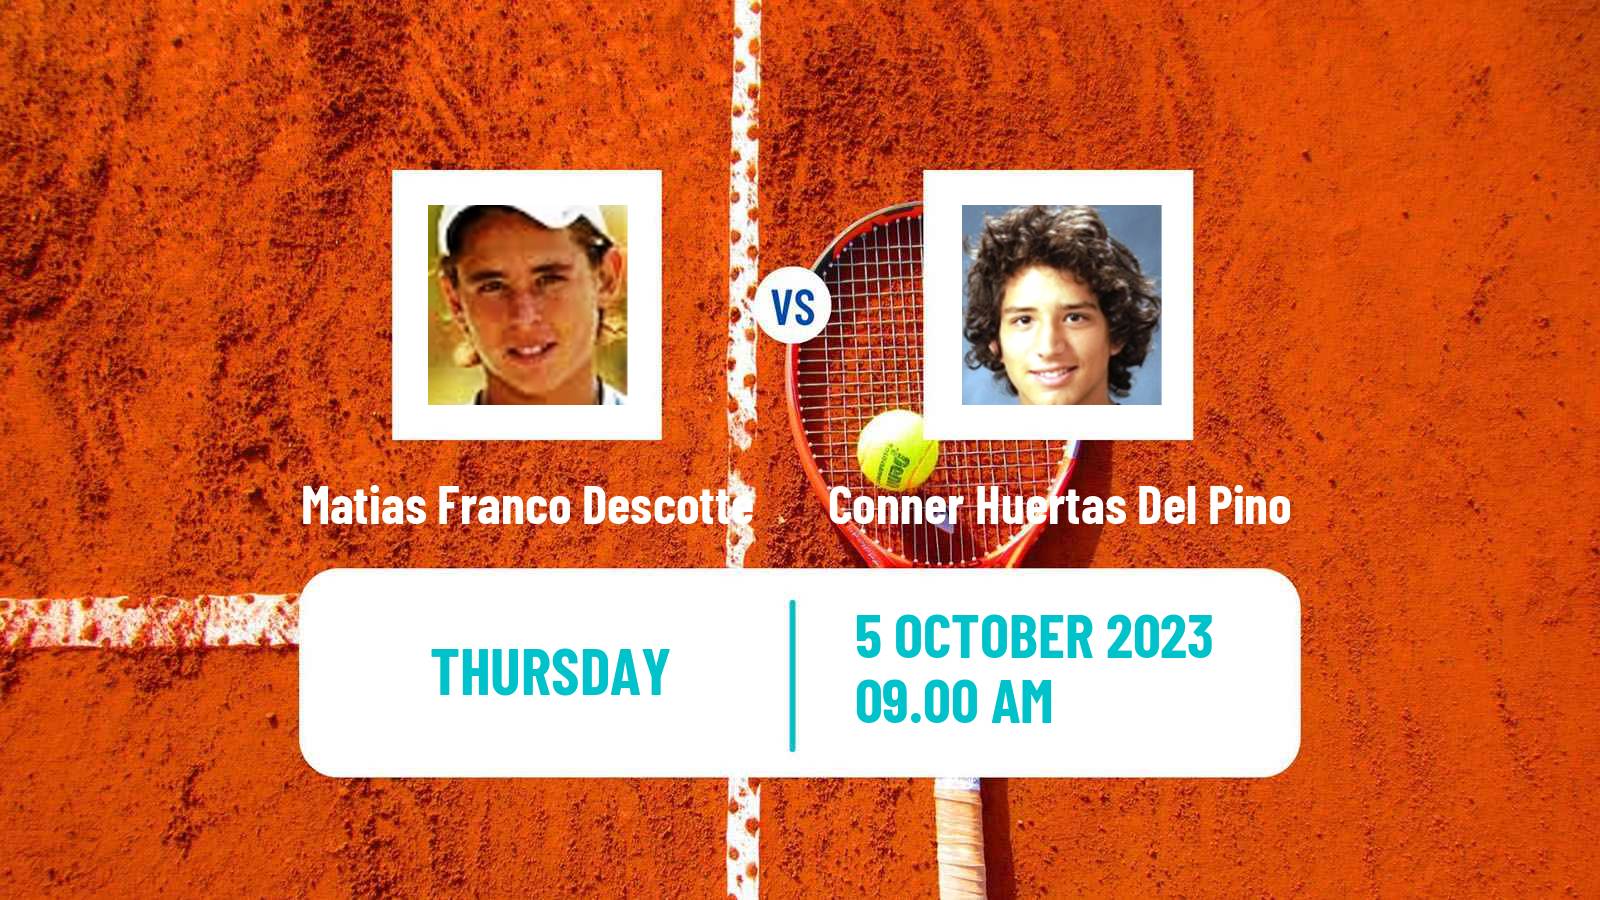 Tennis ITF M25 Mendoza Men Matias Franco Descotte - Conner Huertas Del Pino